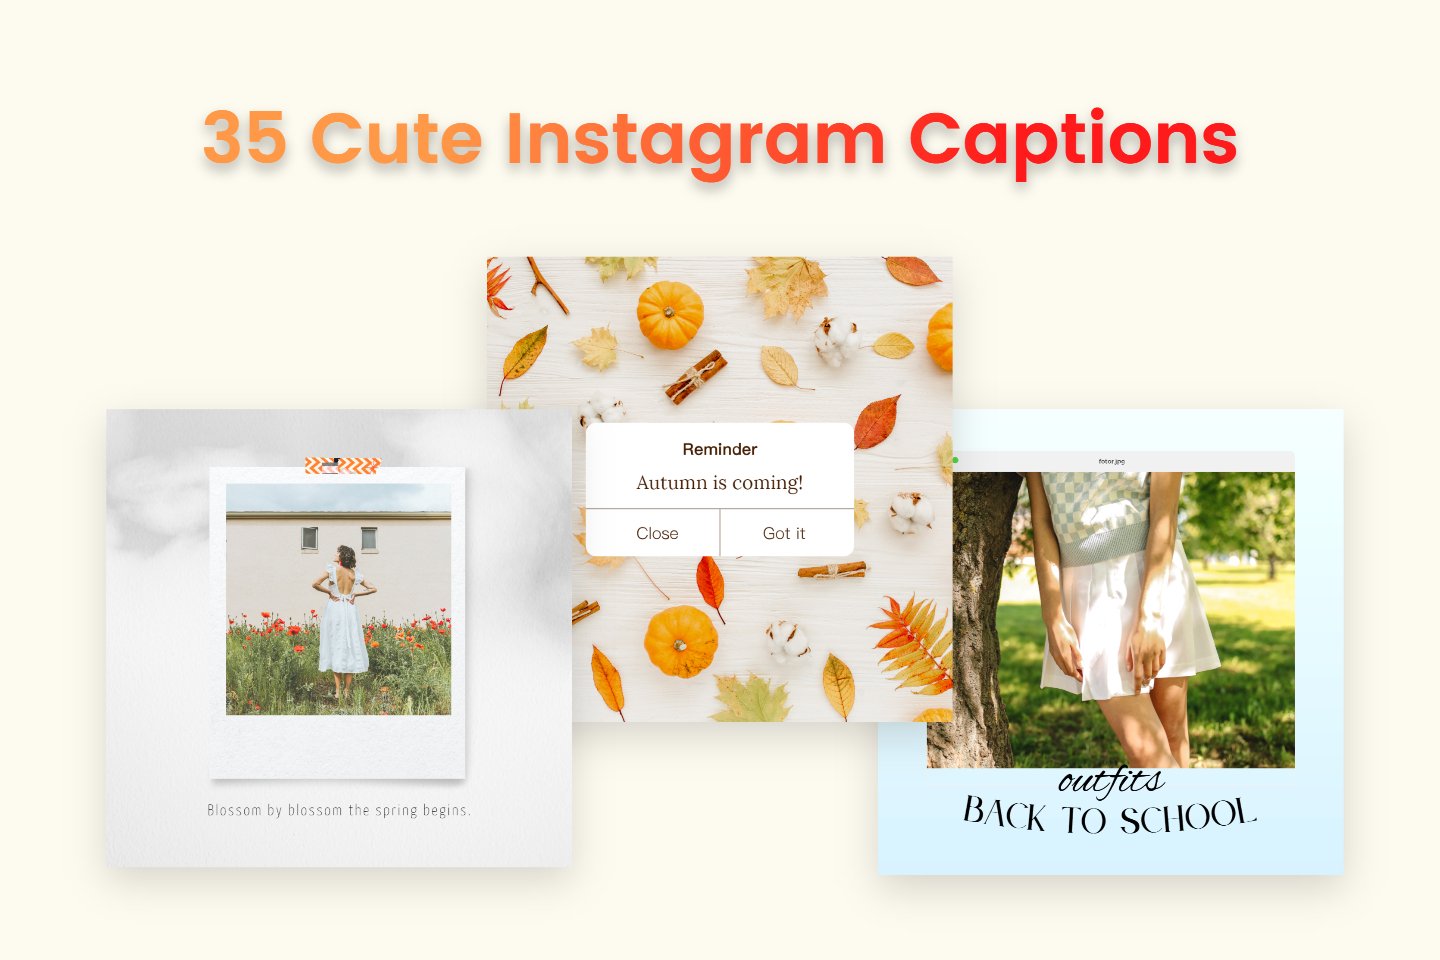 8 Favorite Captions & Post ideas after taking an Instagram break